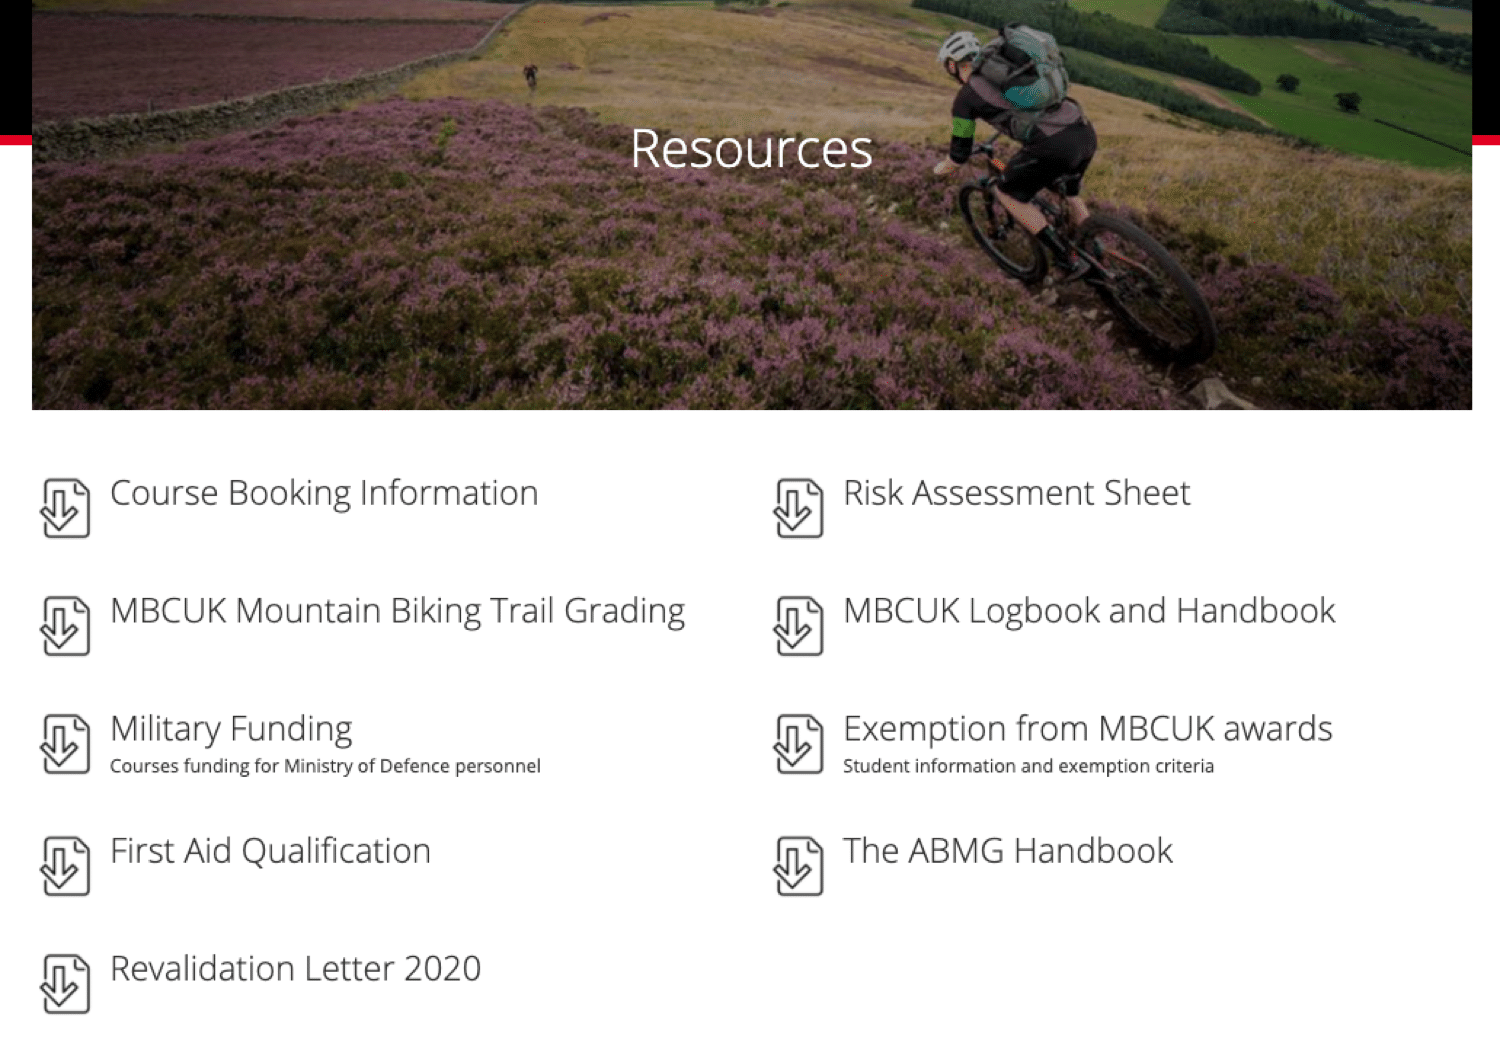 Ett exempel på en resurssida (relaterad till mountainbike) som hittas med den här sökoperatören